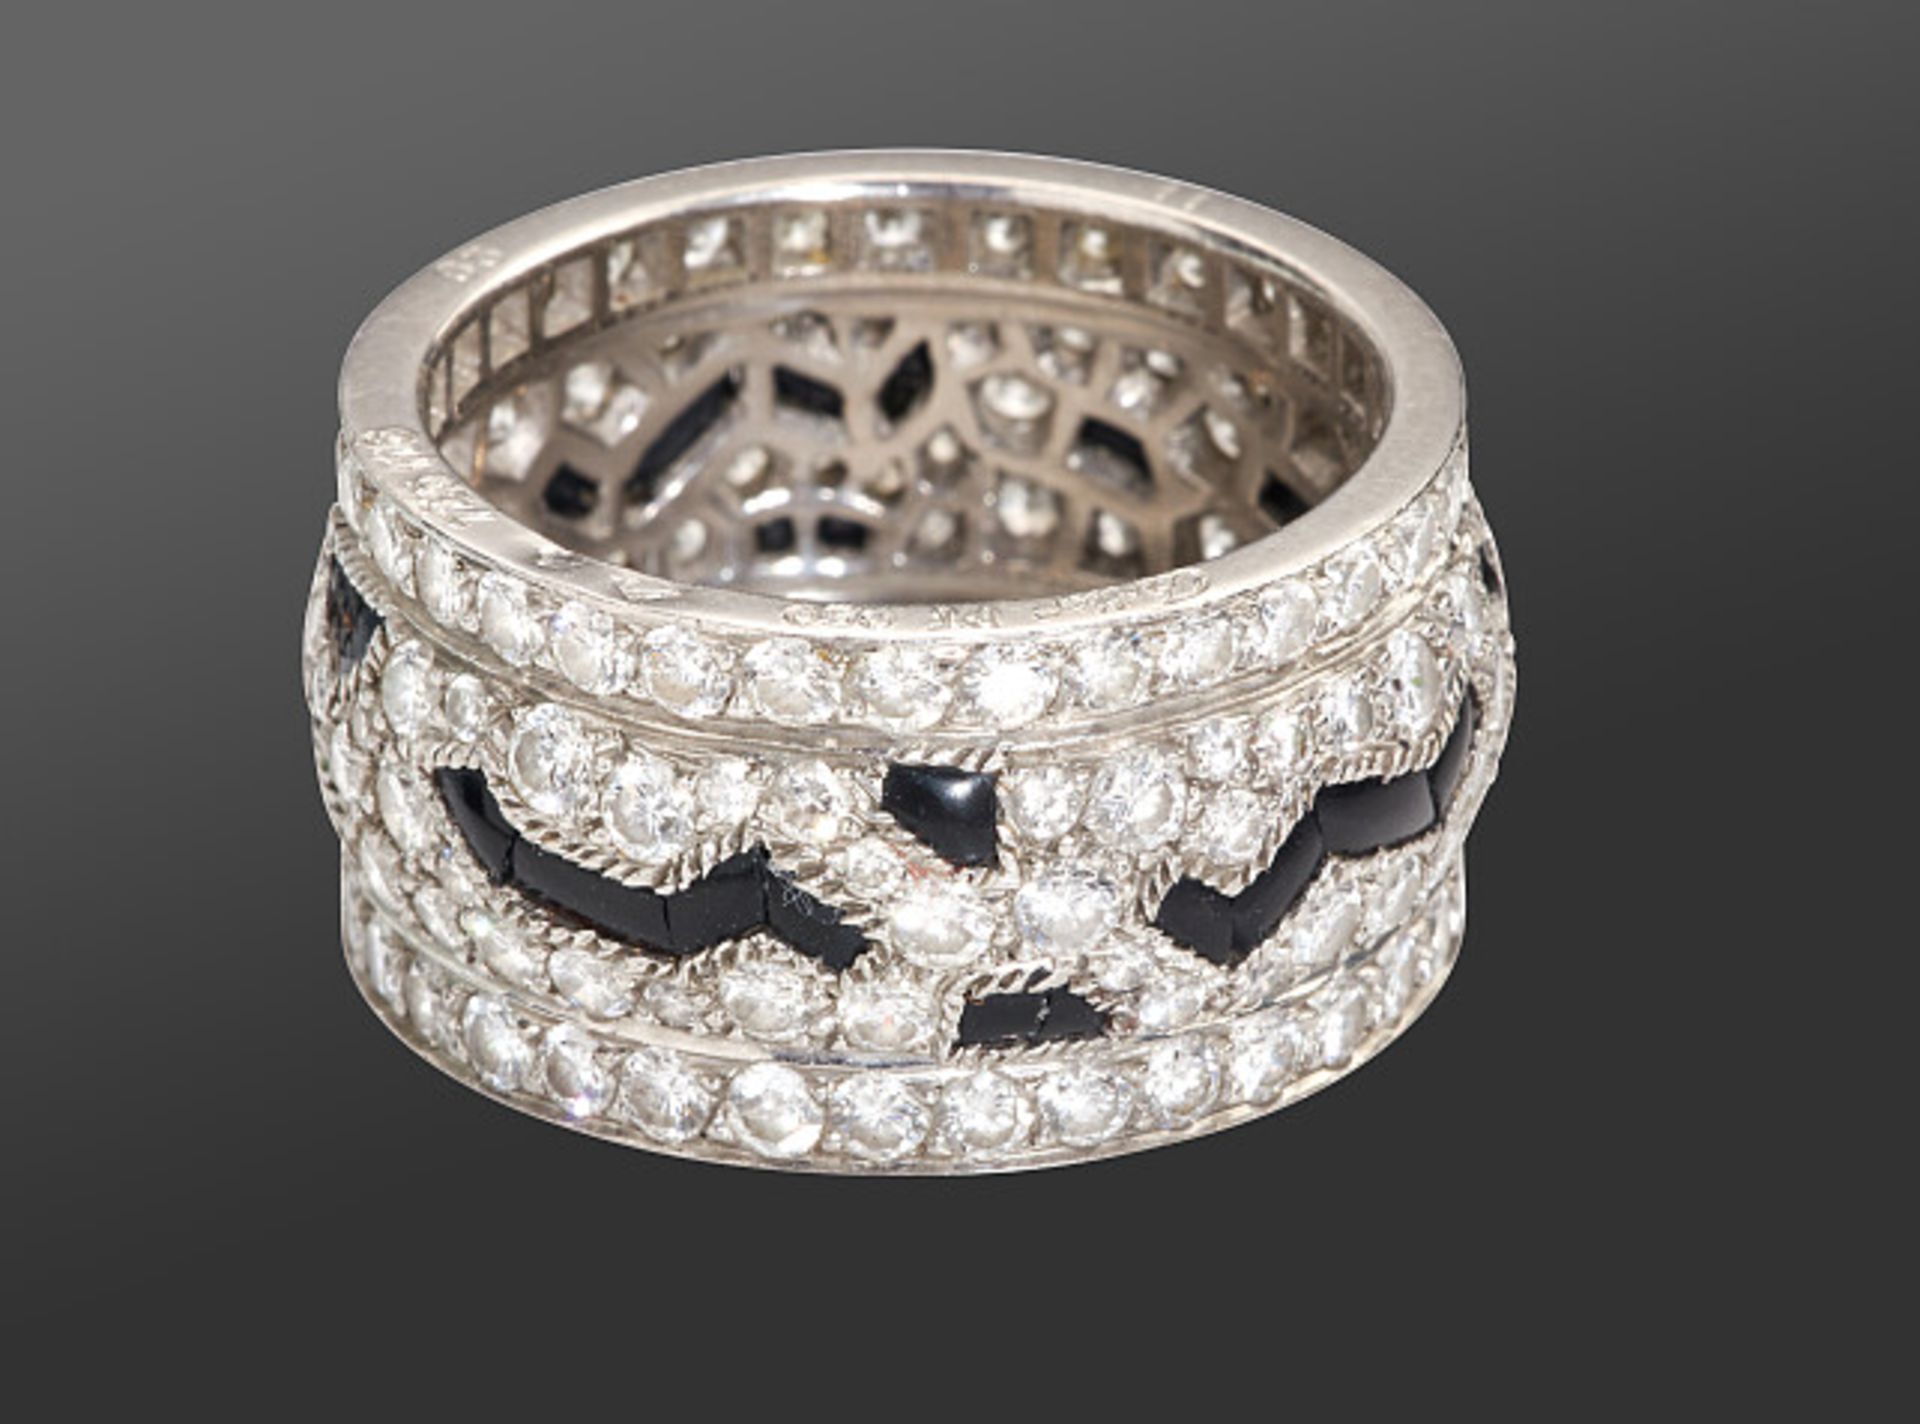 Deutsches Reich 1933 - 1945 - Schmuck und Juwelen : Diamant - Onyx Ring by Cartier. - Bild 10 aus 15